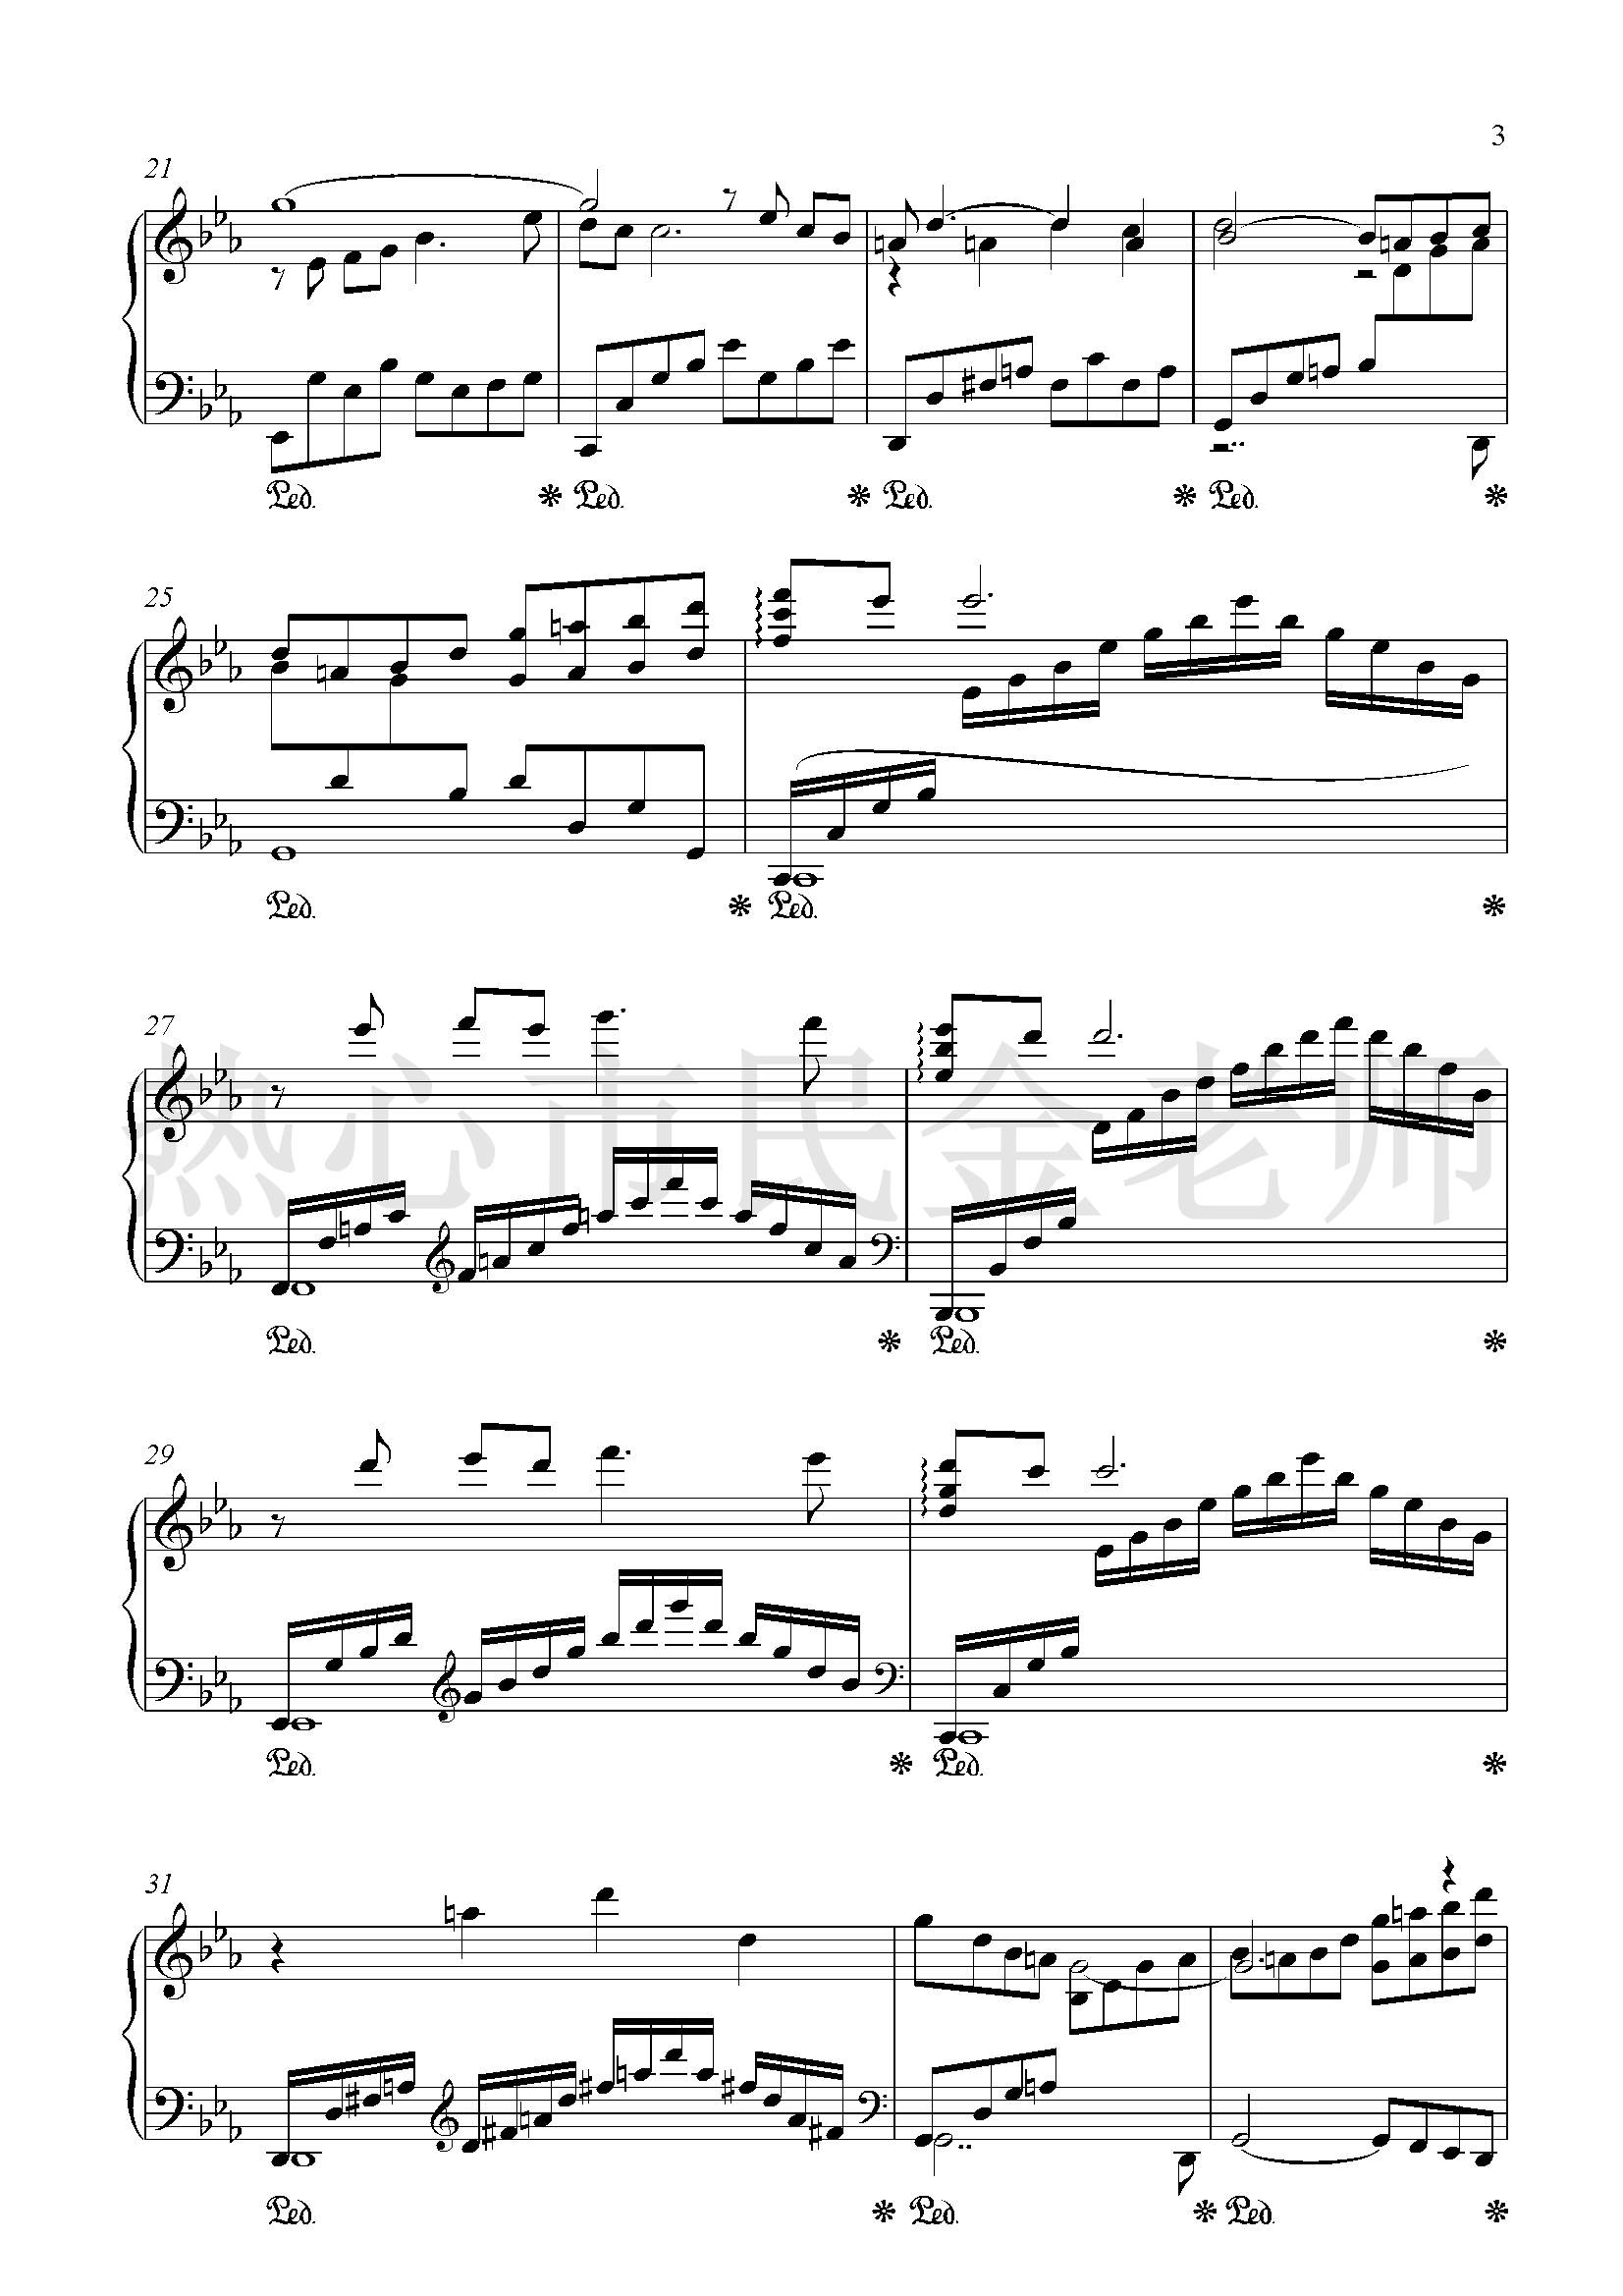 思乡曲钢琴谱-乡愁-金老师独奏1905013